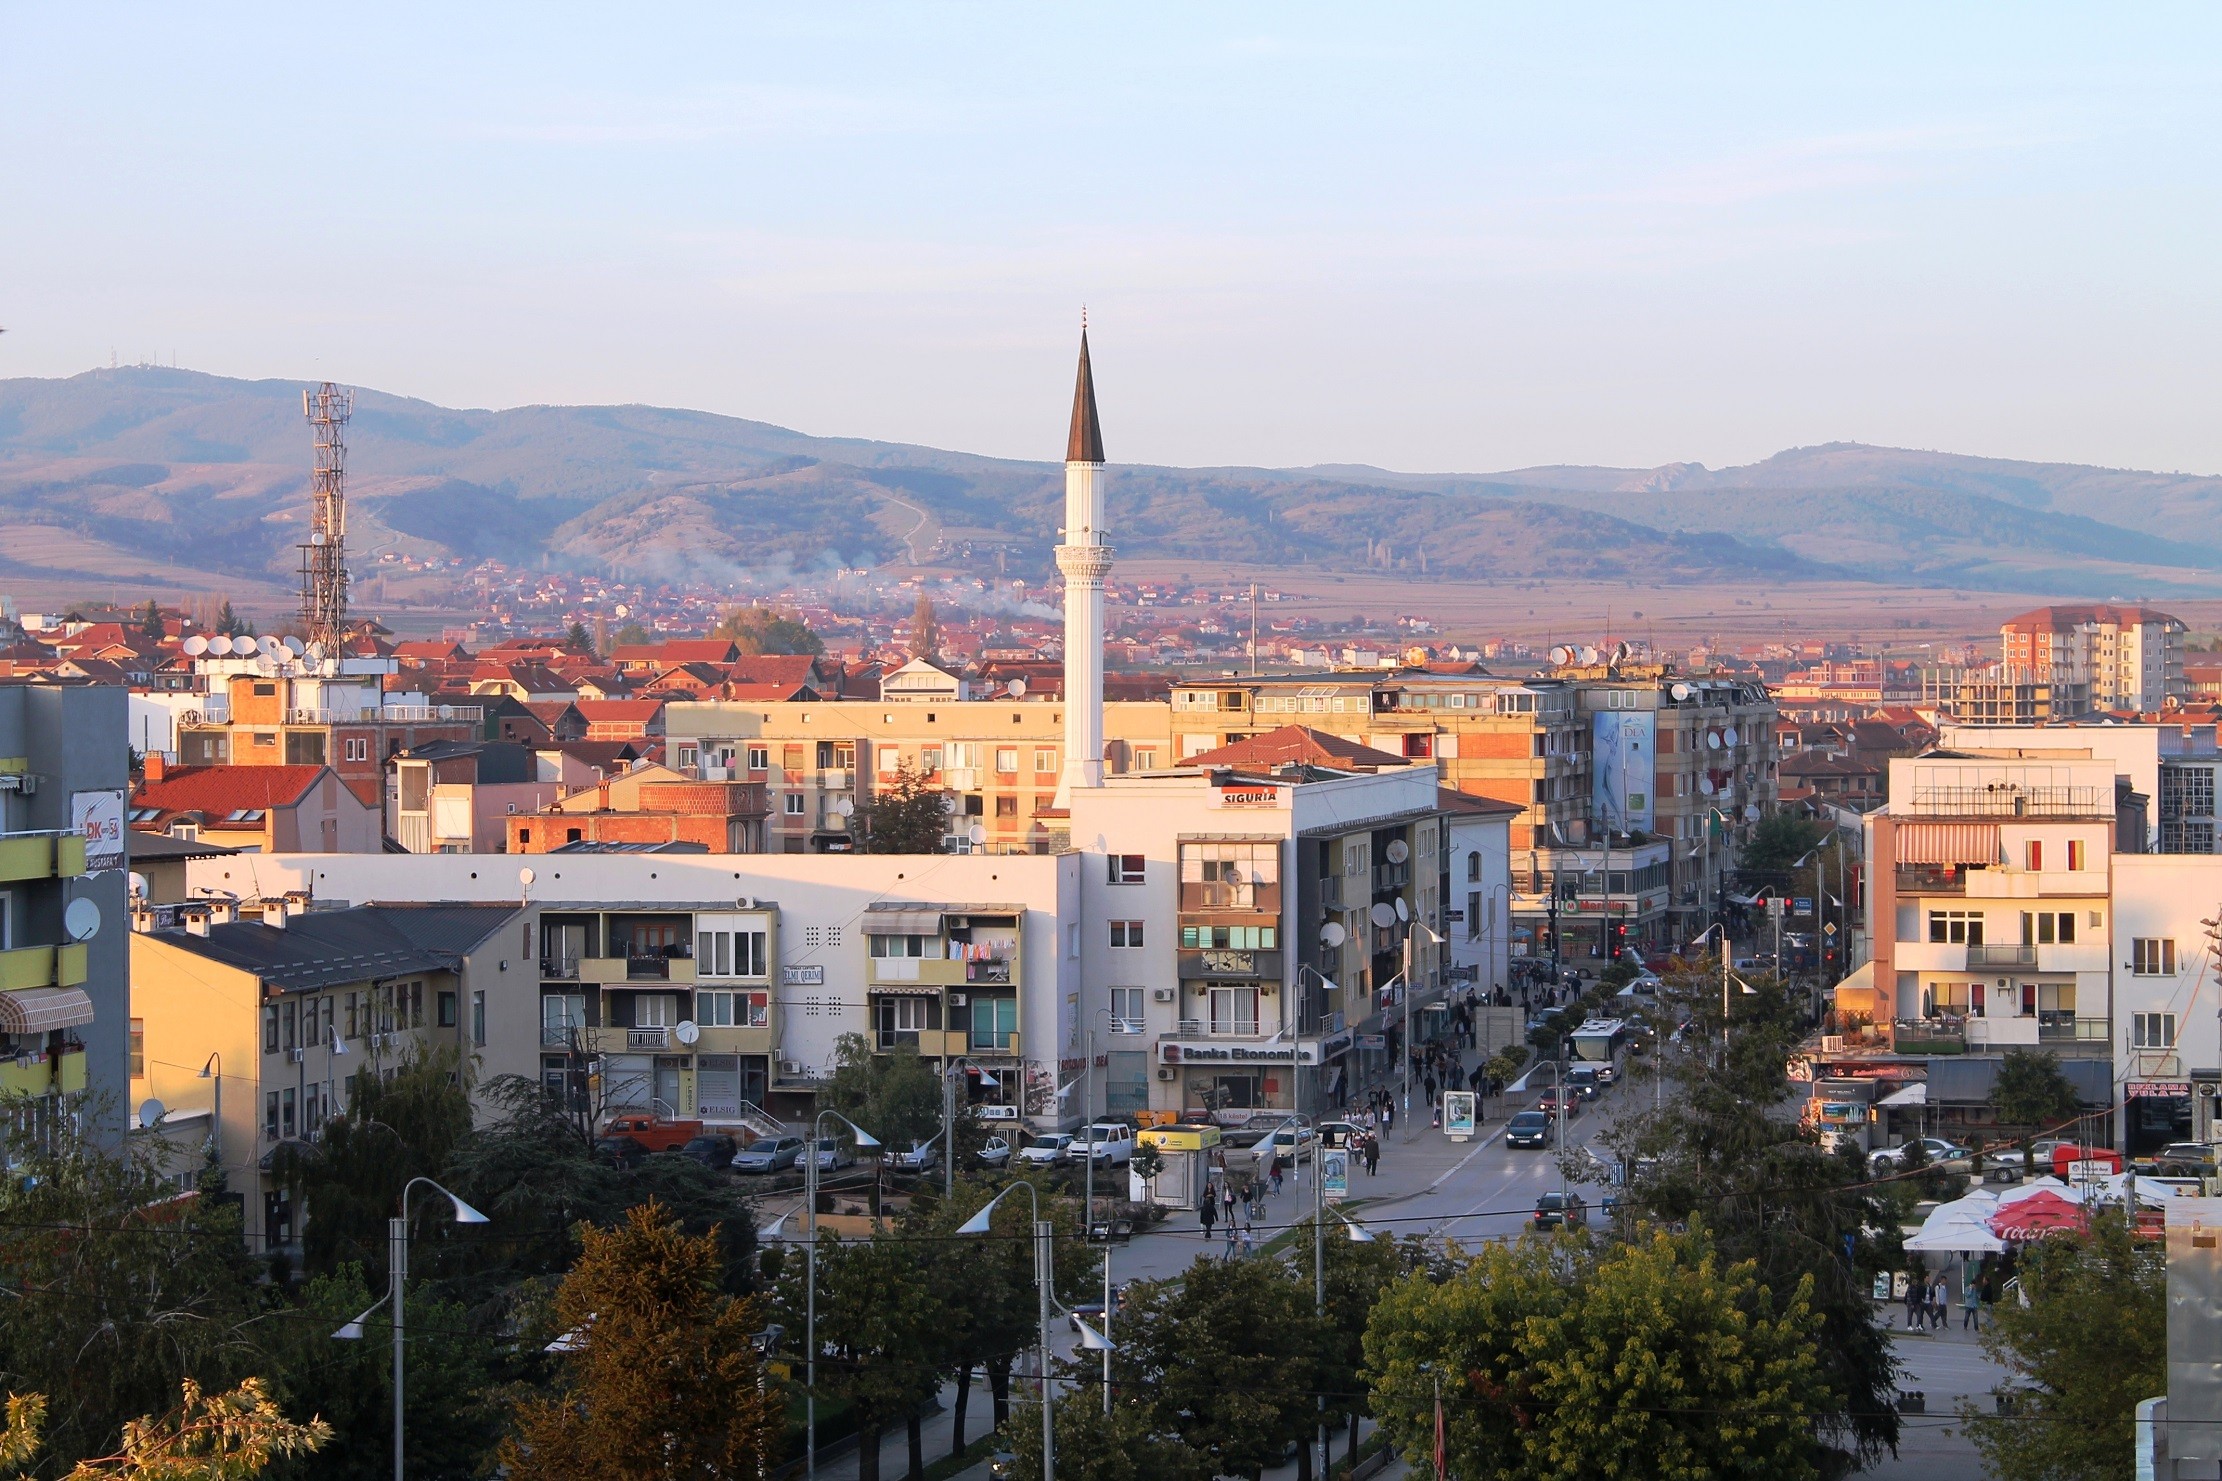 Komunën e Gjilanit e brengos veprimtaria e zyrës paralele të kryetarit të Komunës  